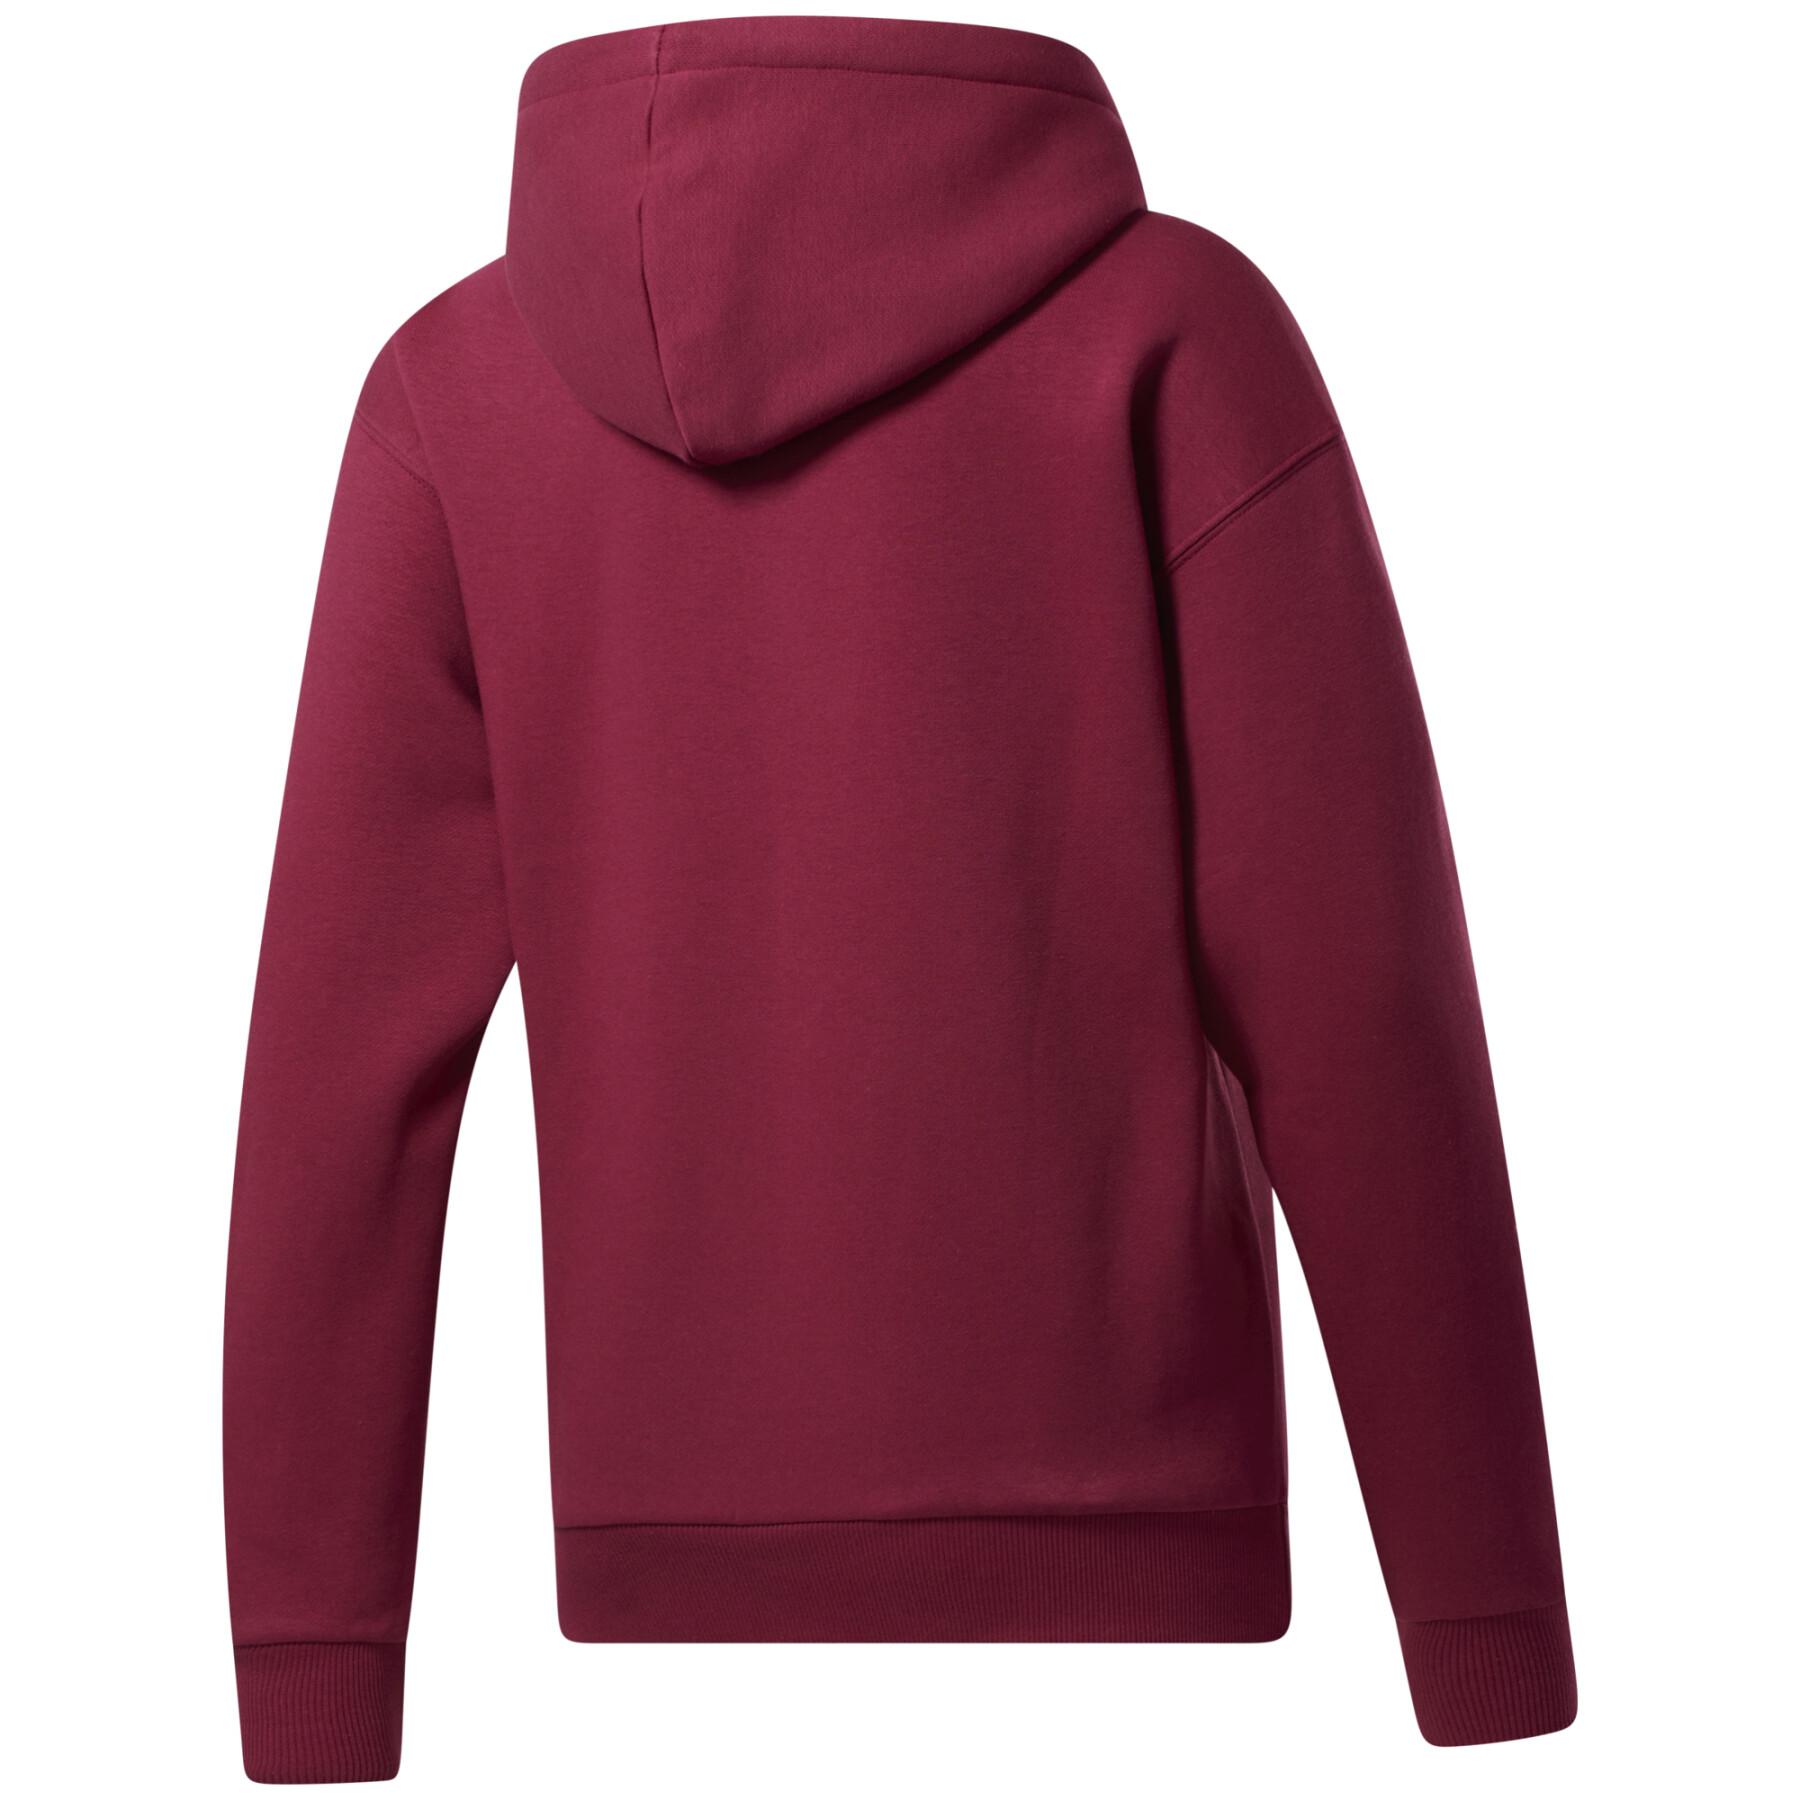 Women's hoodie Reebok Identity Fleece